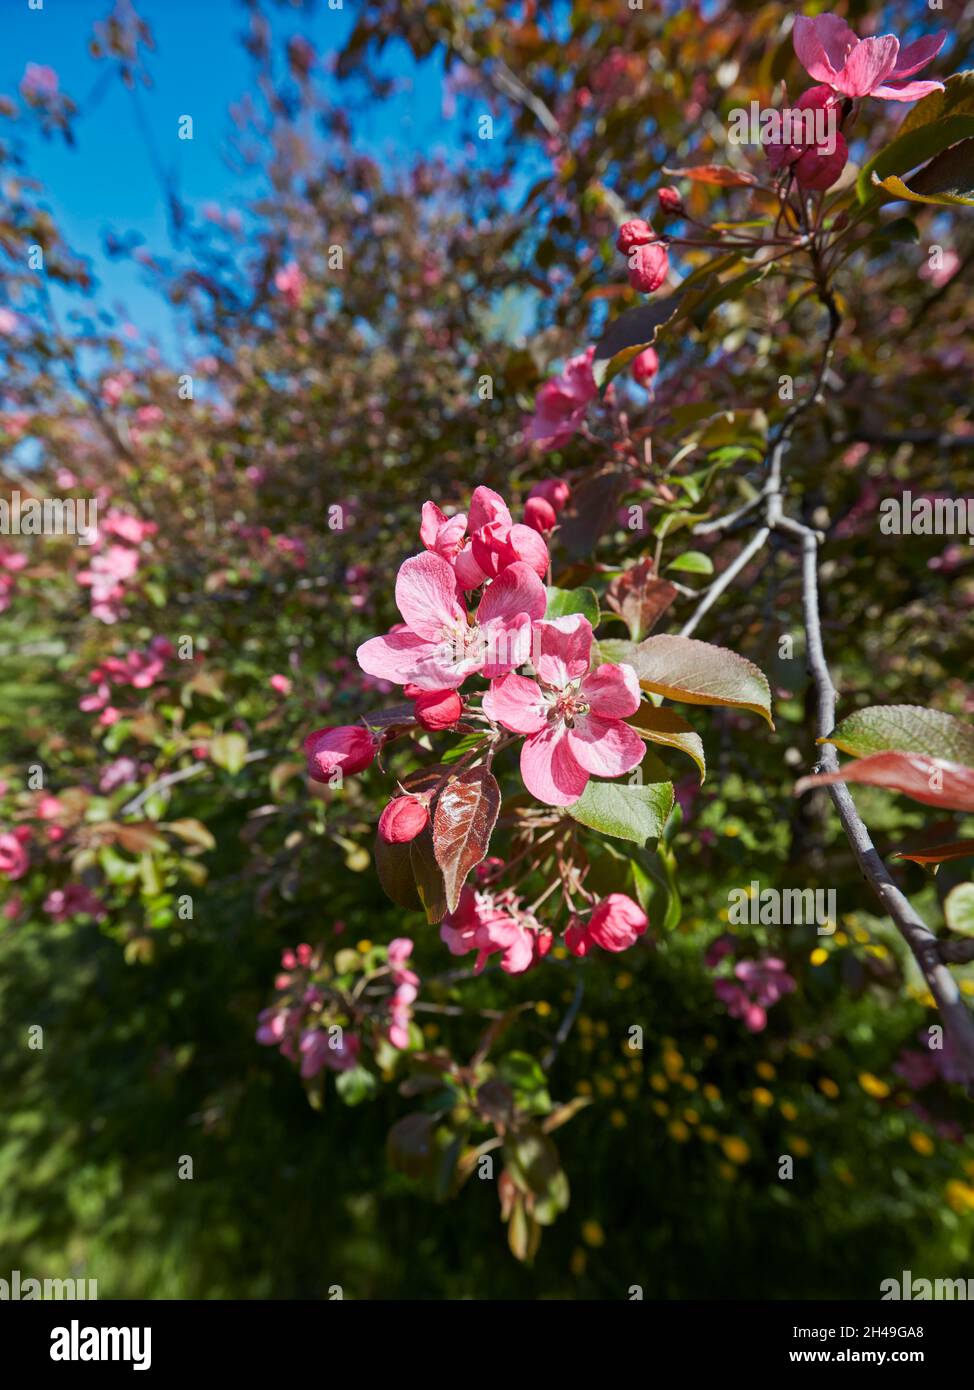 Blossoming branch of Niedzwetzky's apple tree (Malus niedzwetzkyana). Kolomenskoye estate, Moscow, Russia. Stock Photo